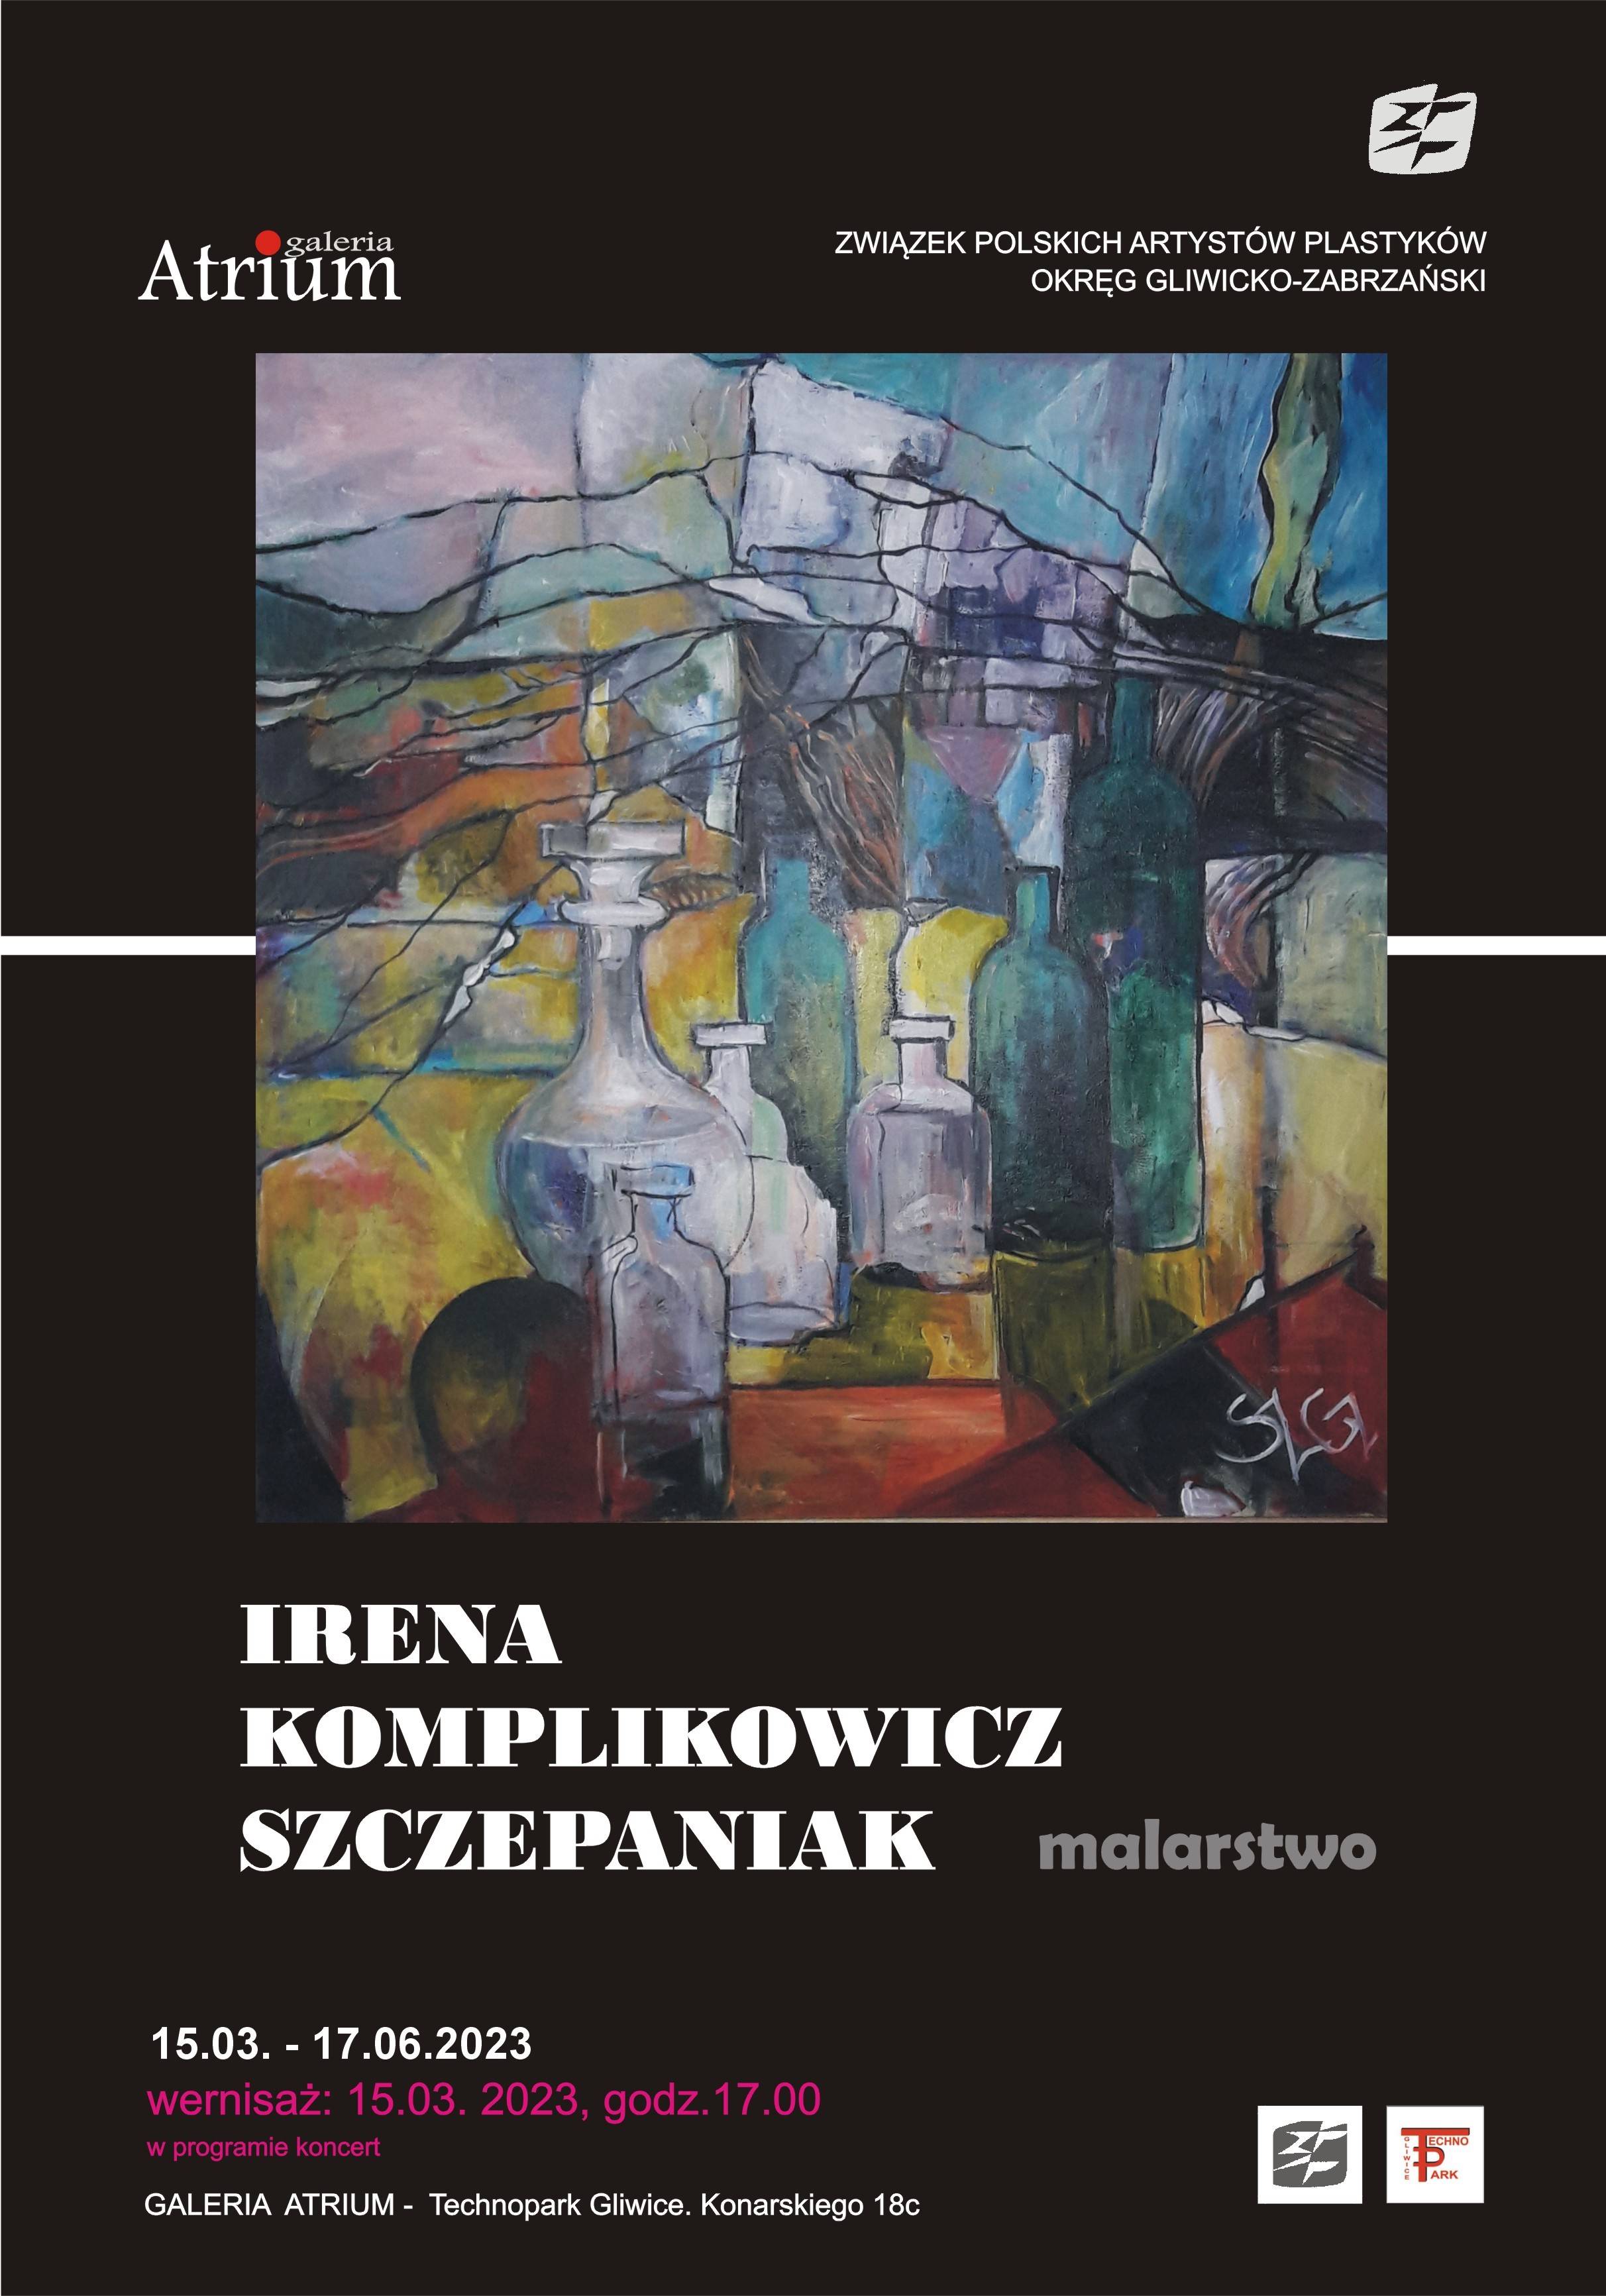 Irena Komplikowicz-Szczepniak - malarstwo